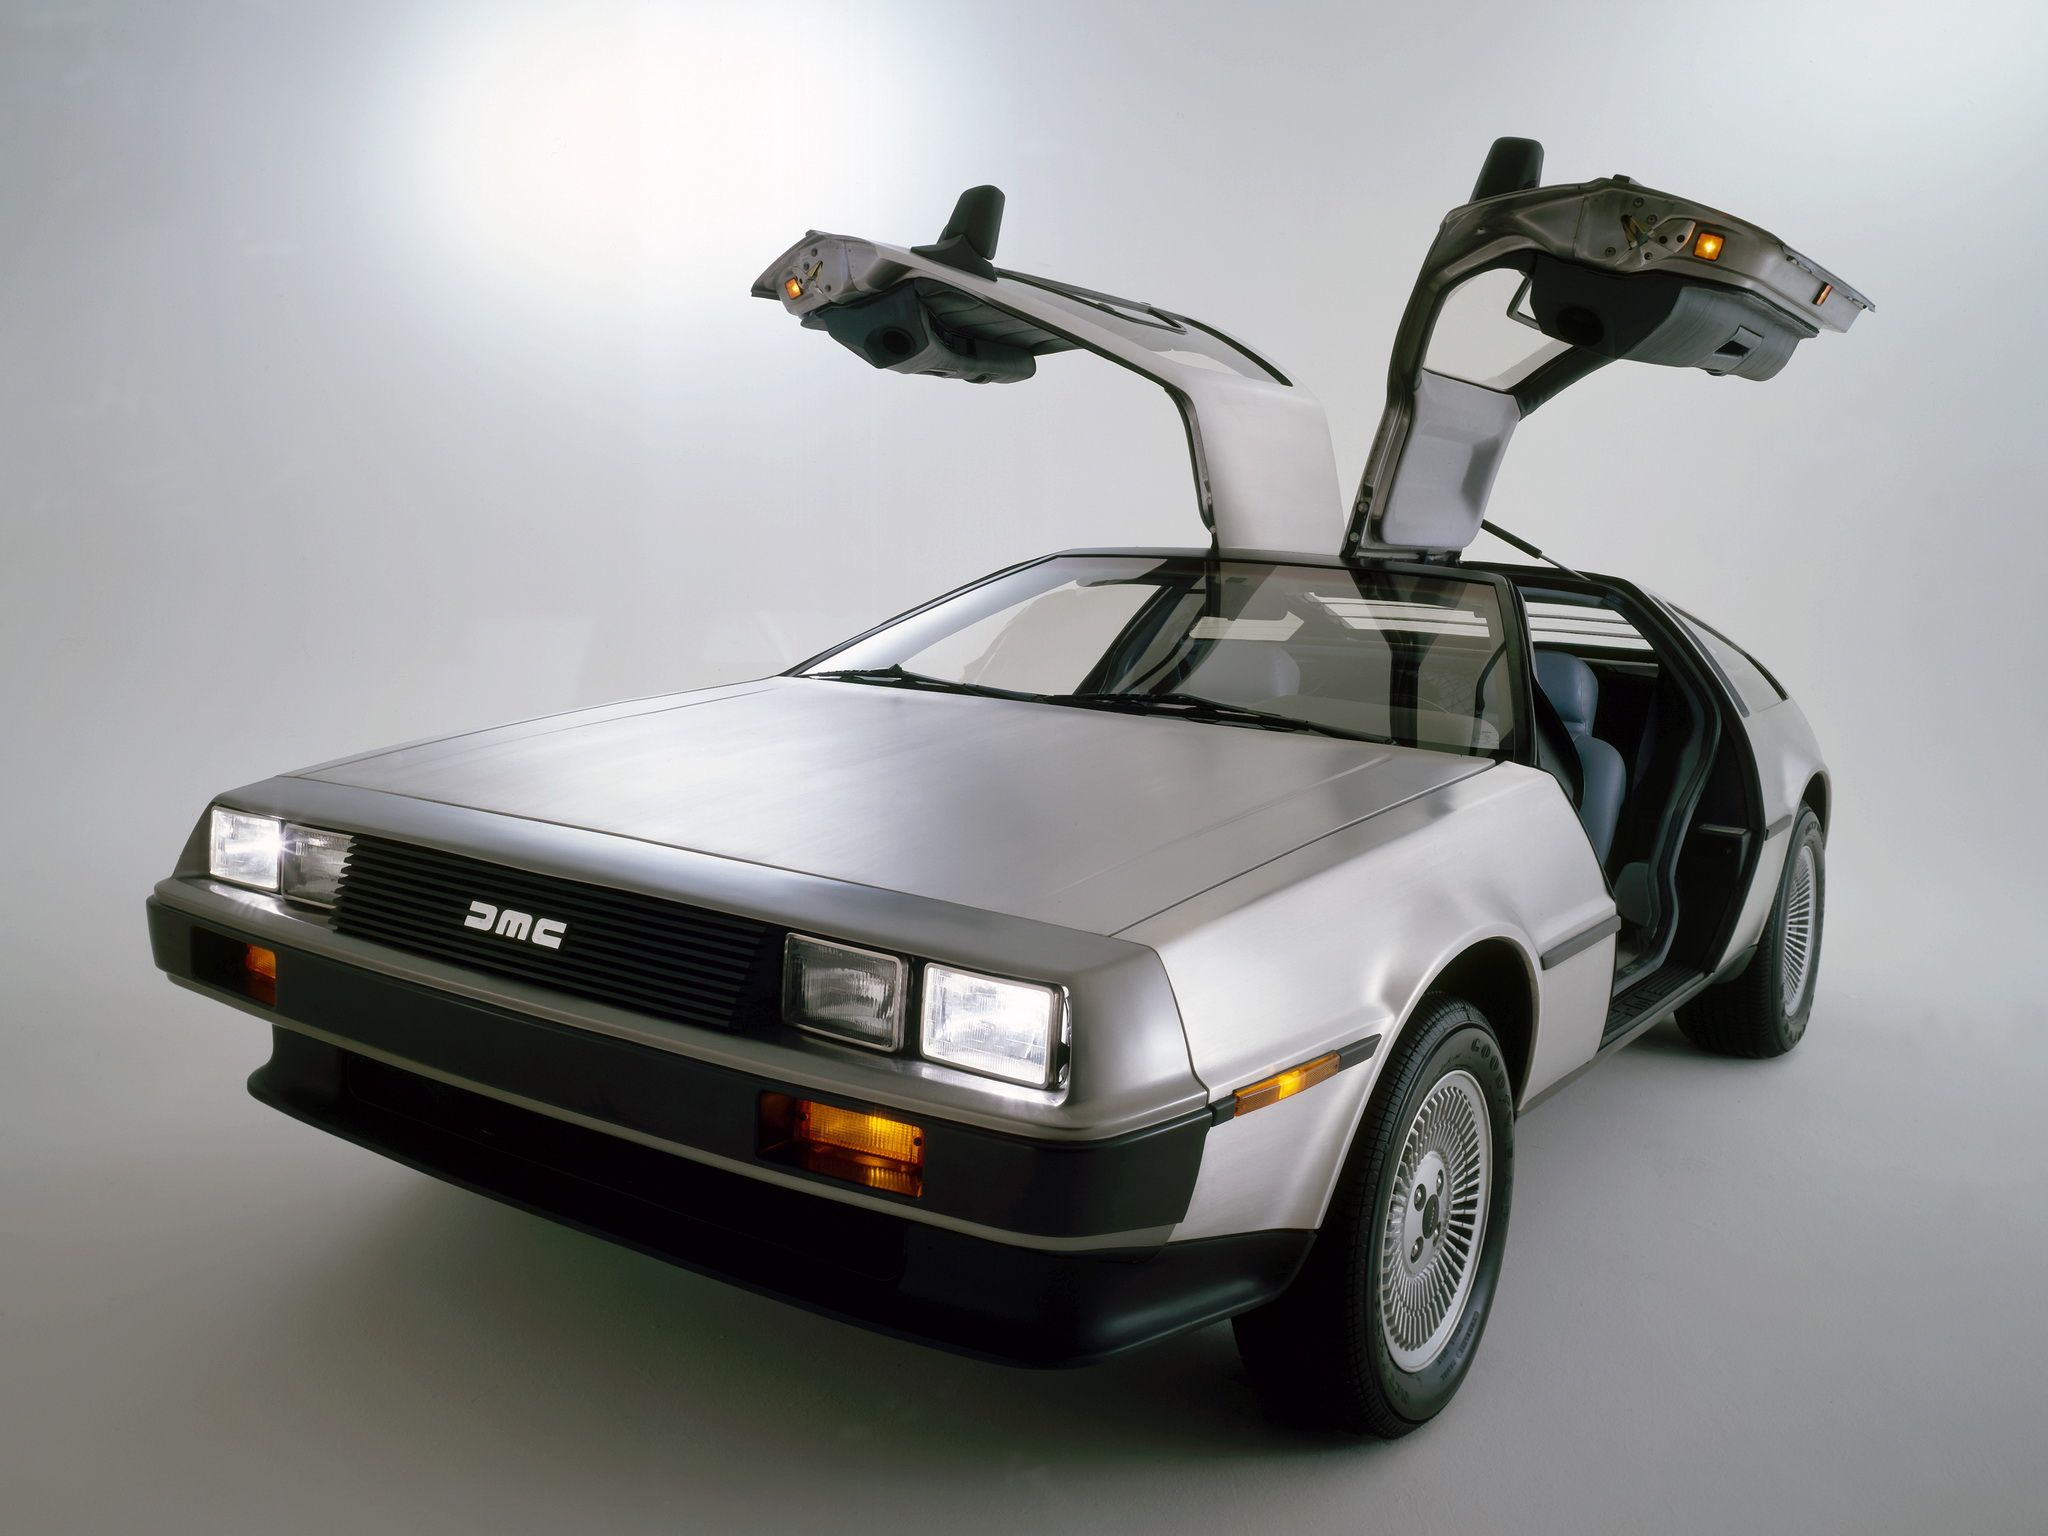 DeLorean Back To The Future DeLorean DMC 12 Wallpaperx1080